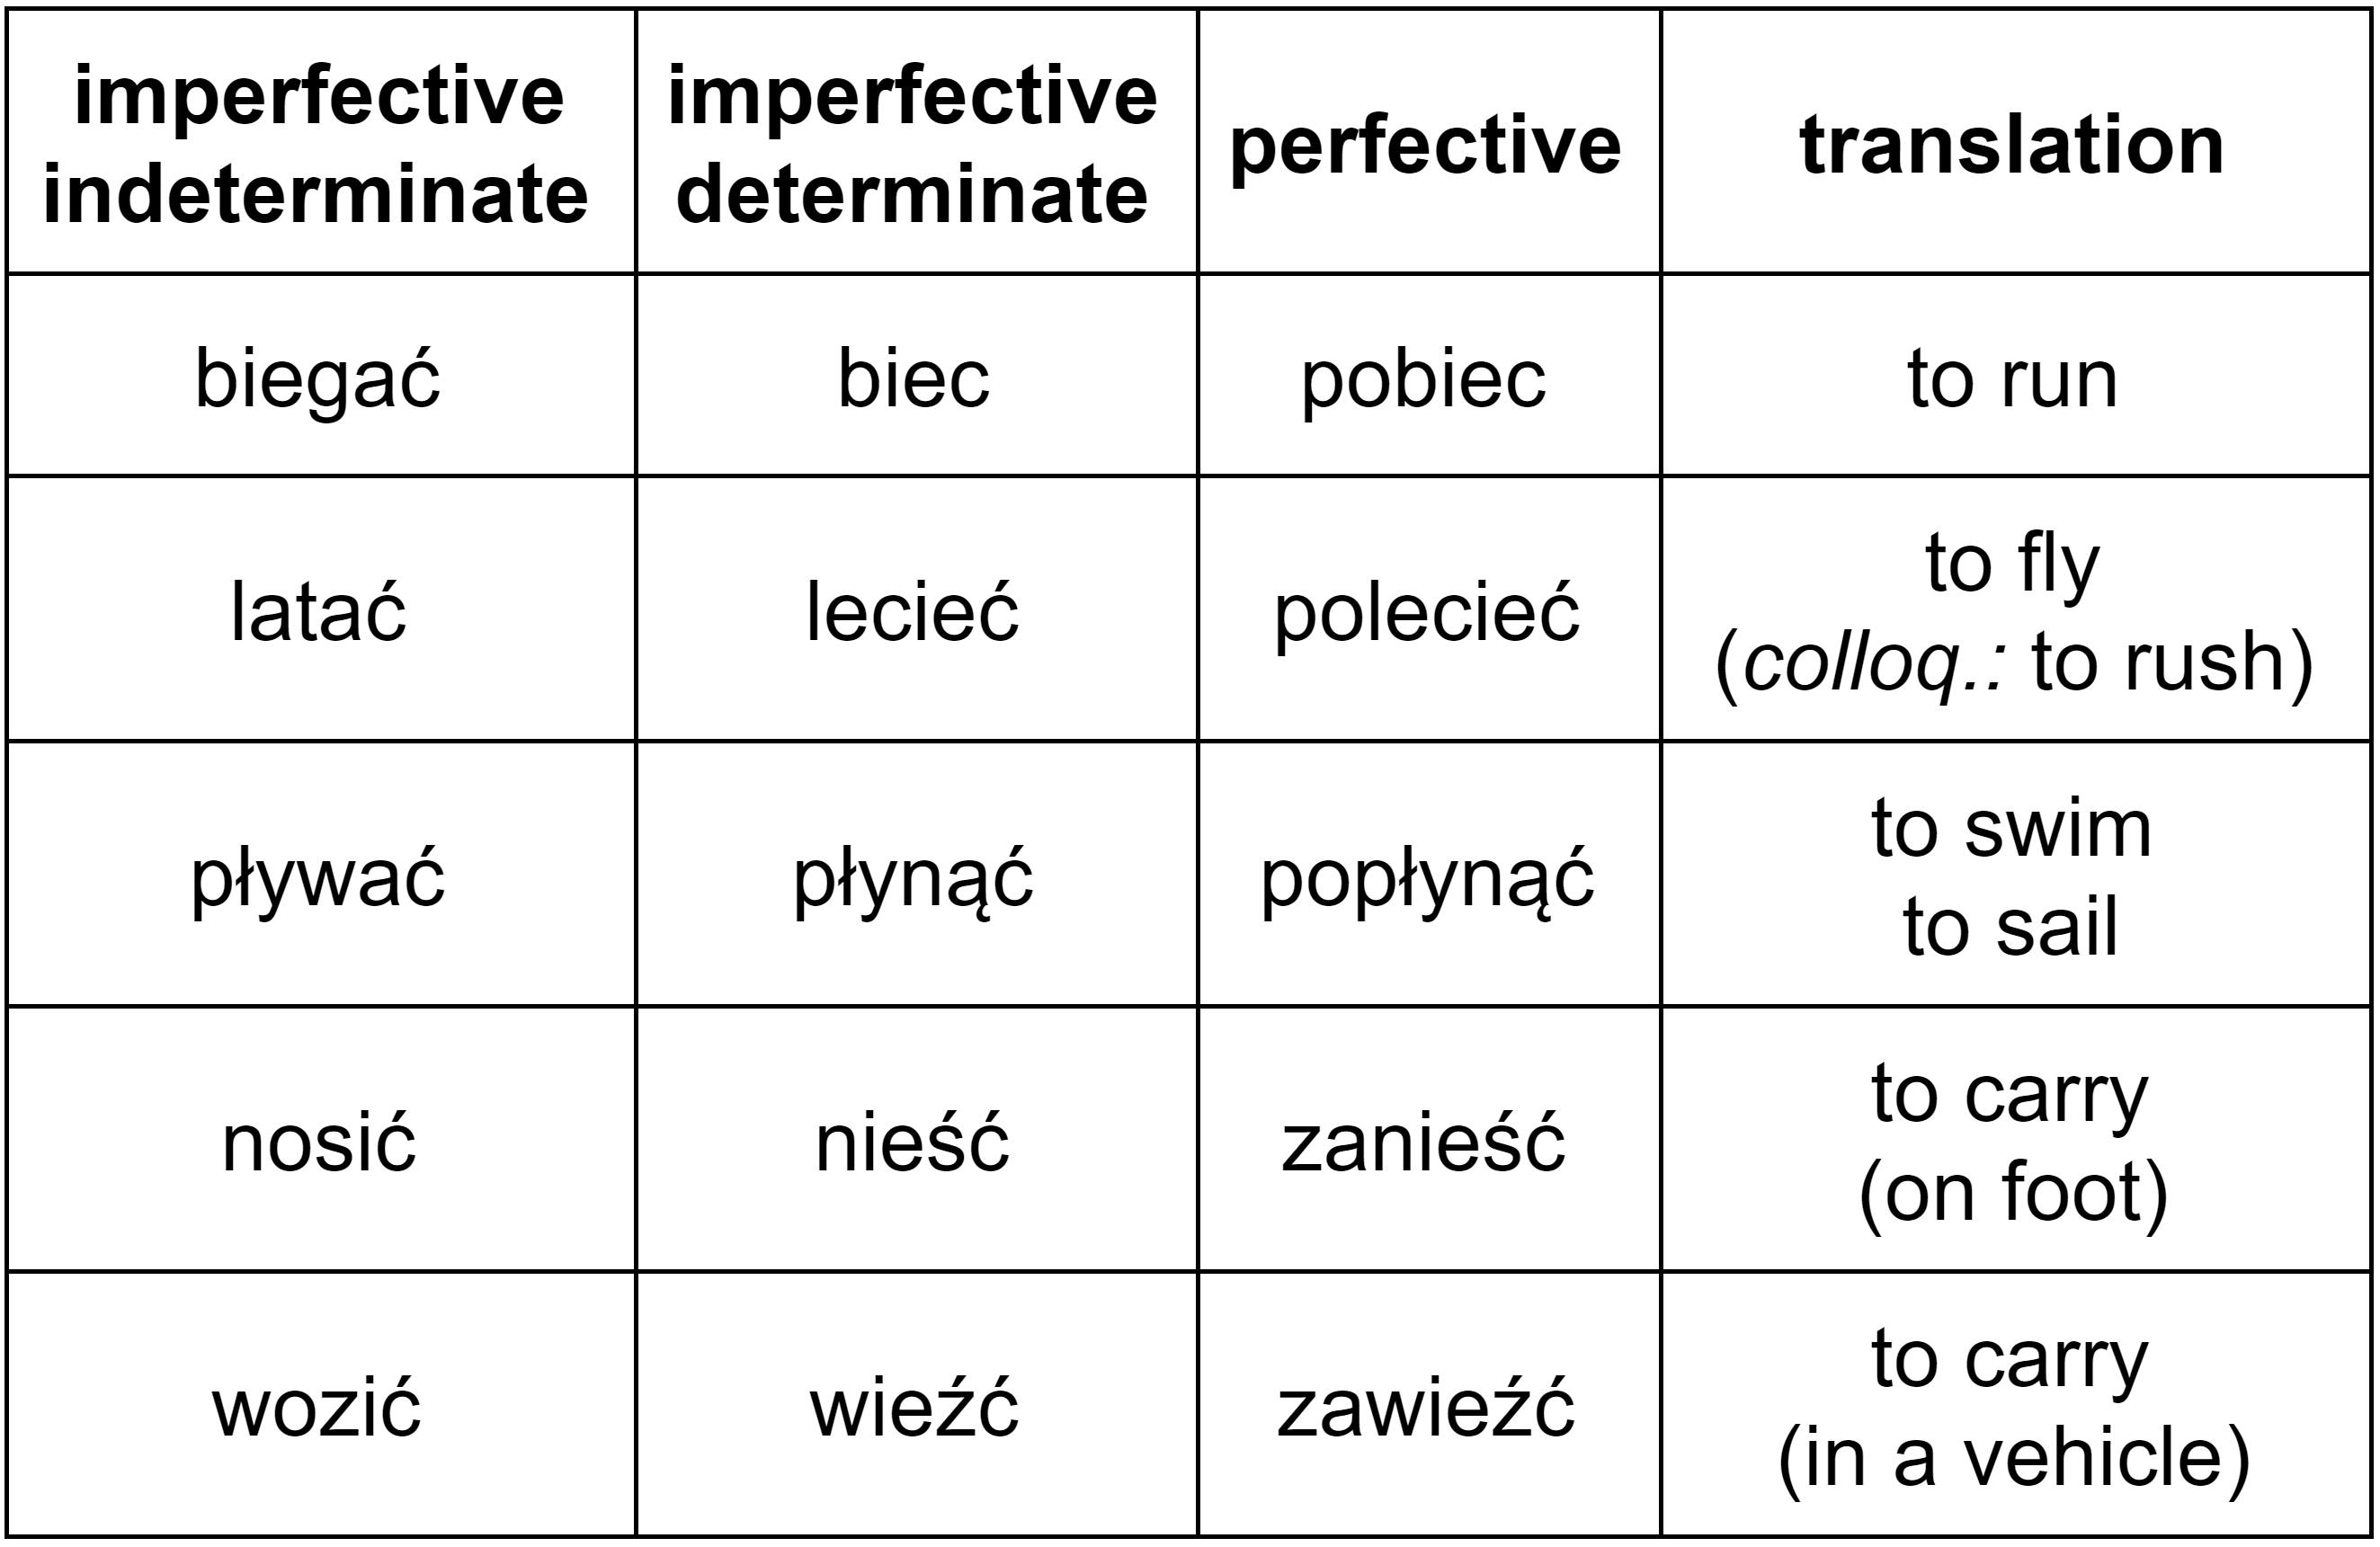 Polish verbs of motion “biec”, “lecieć”, “płynąć”, “nieść”, and “wieźć” – imperfective and perfective variants